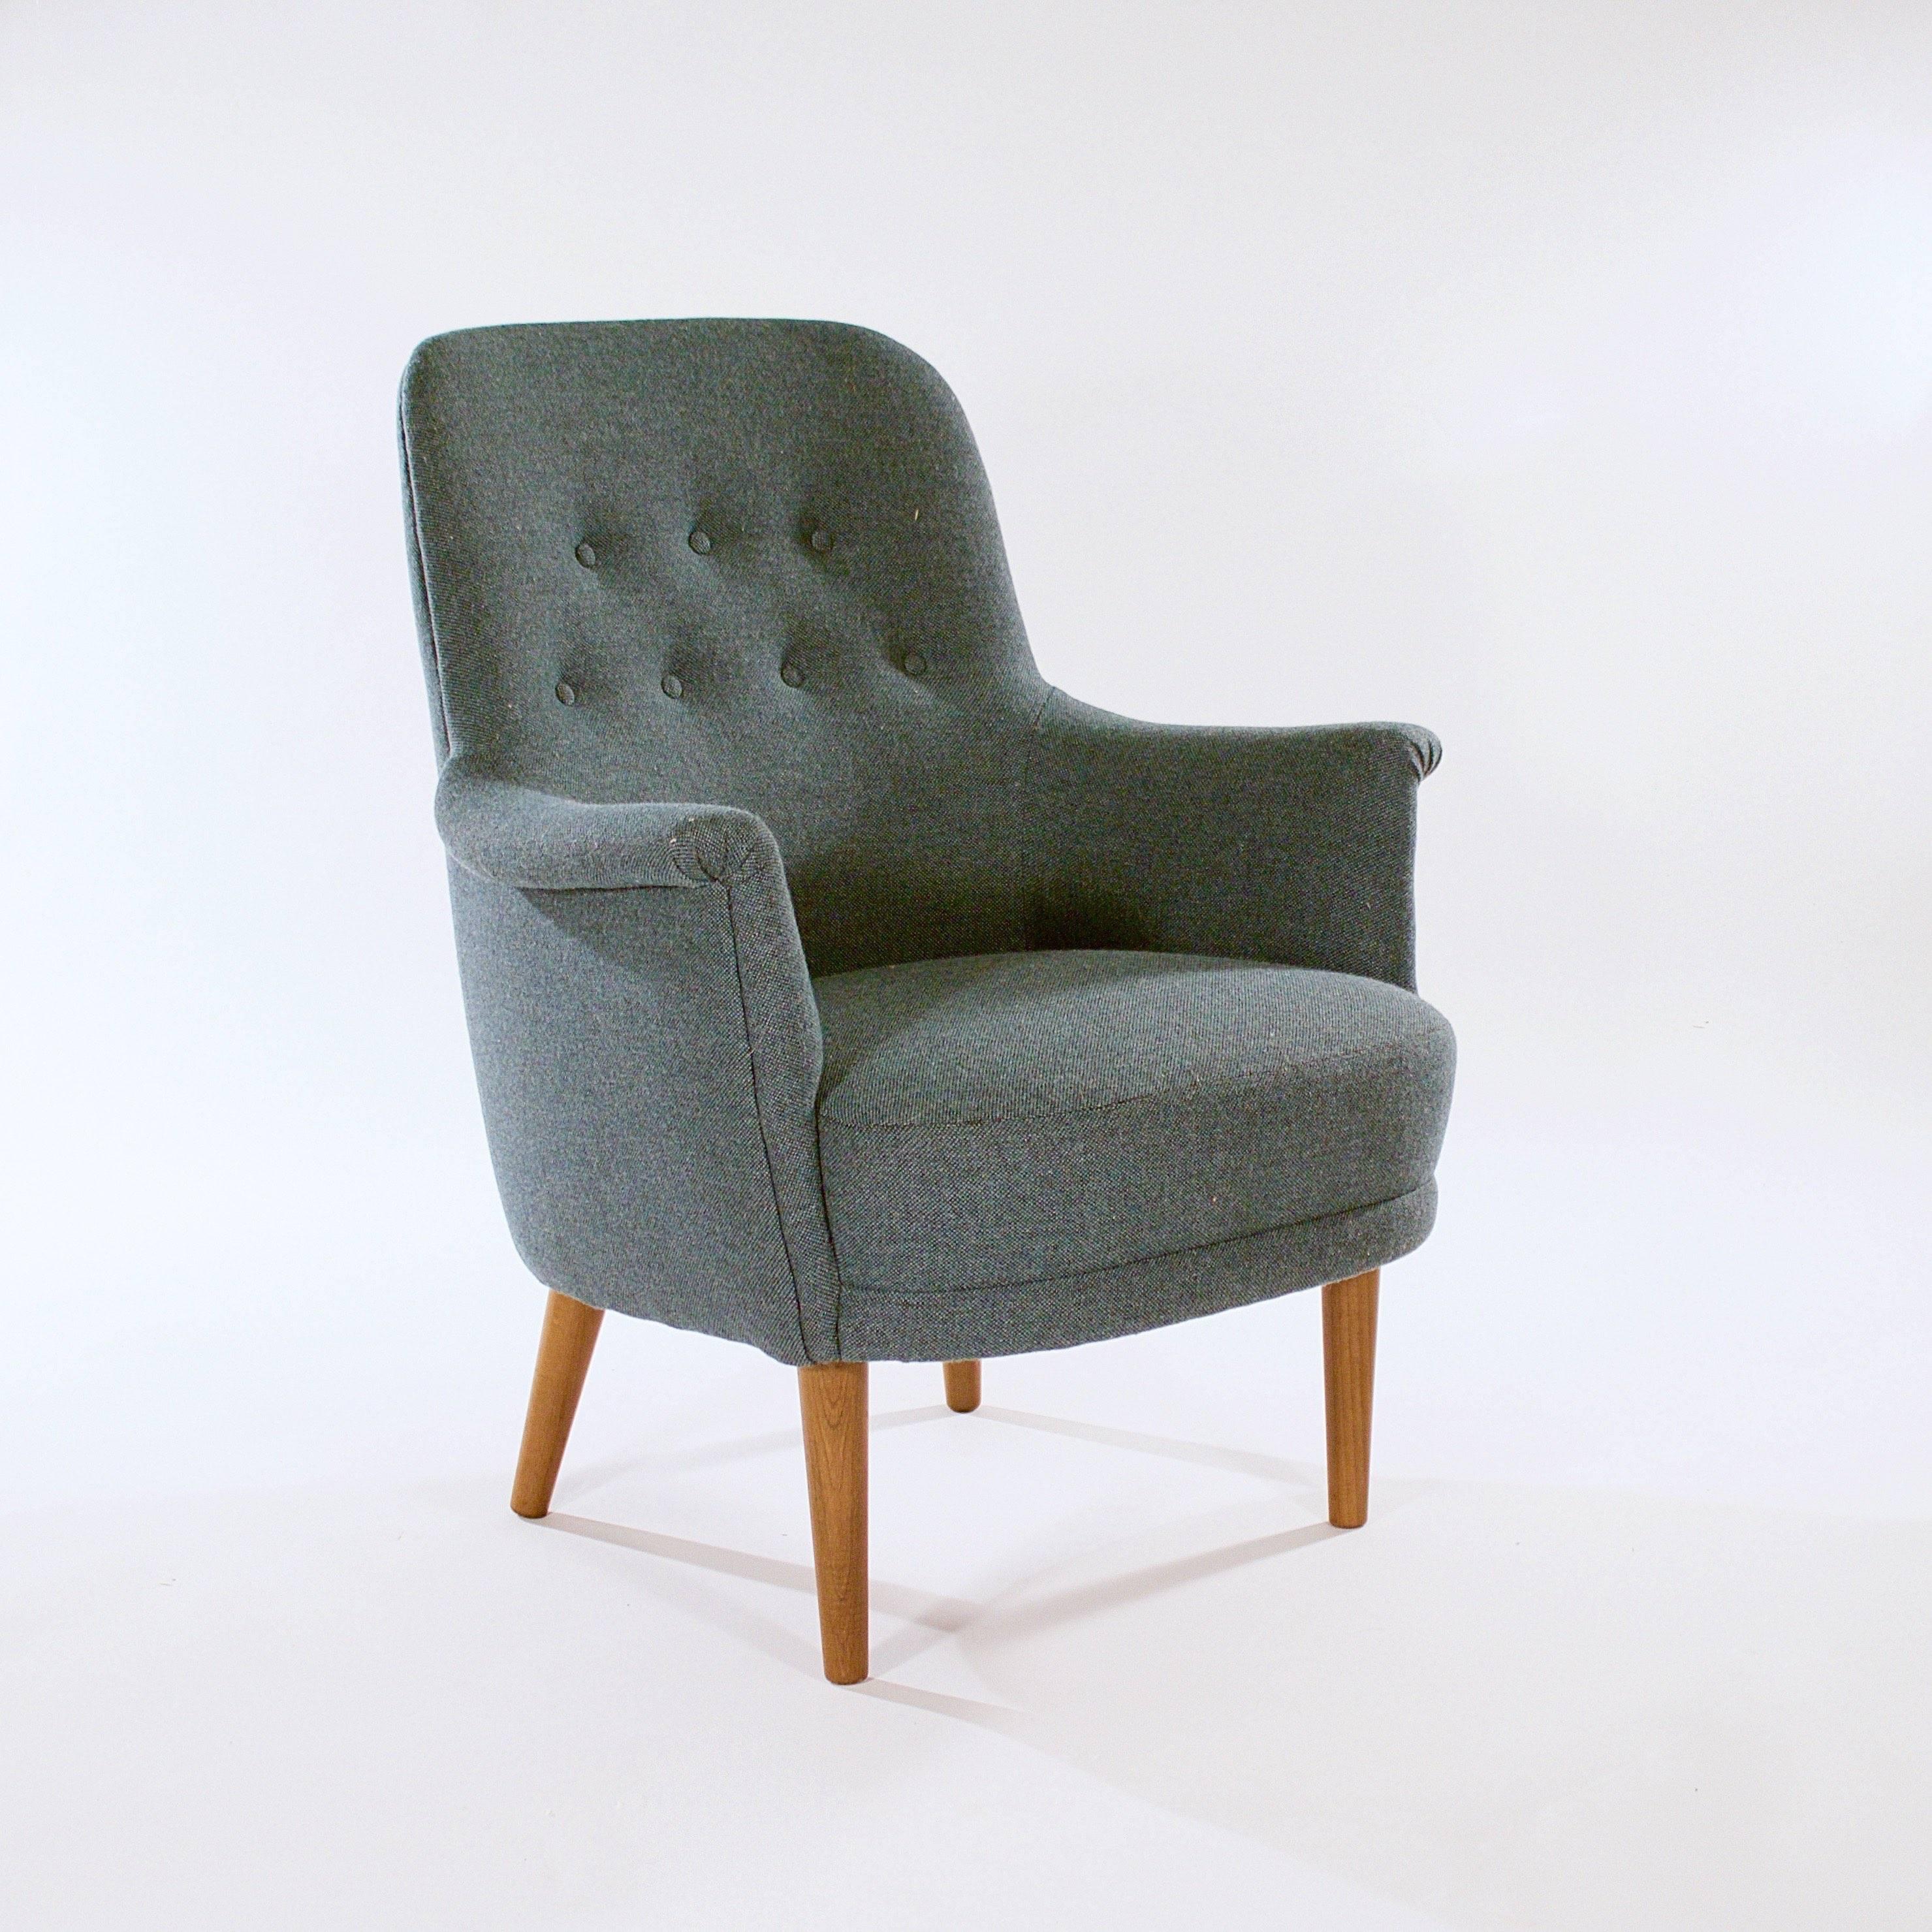 A pair of 'Husmor' upholstered easy chairs.

Designed for O.H. Sjogren

Sweden, circa 1950s.